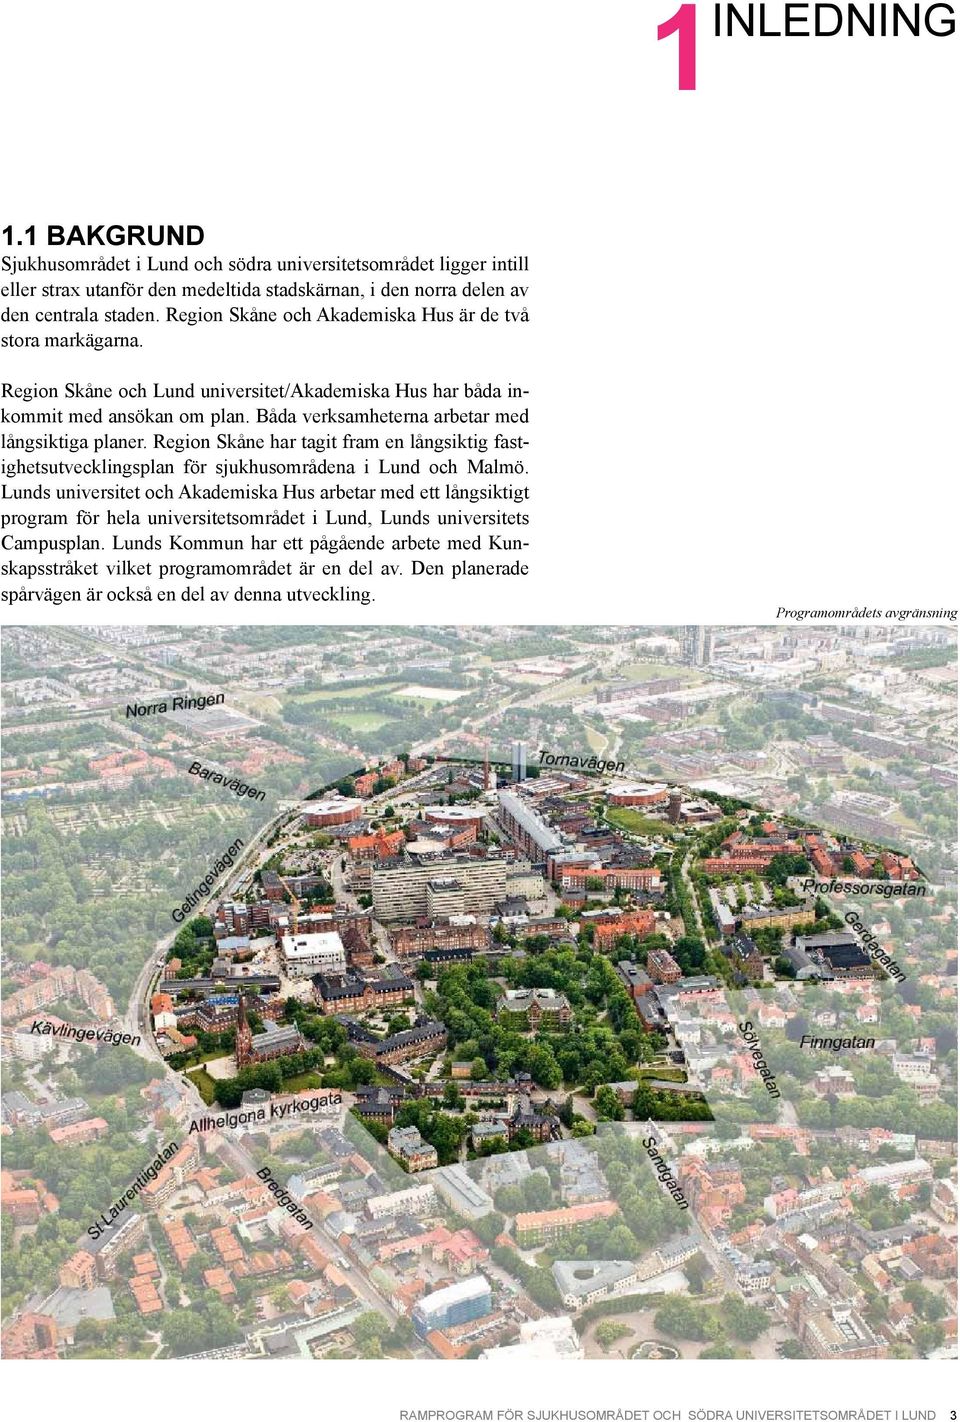 Region Skåne har tagit fram en långsiktig fastighetsutvecklingsplan för sjukhusområdena i Lund och Malmö.